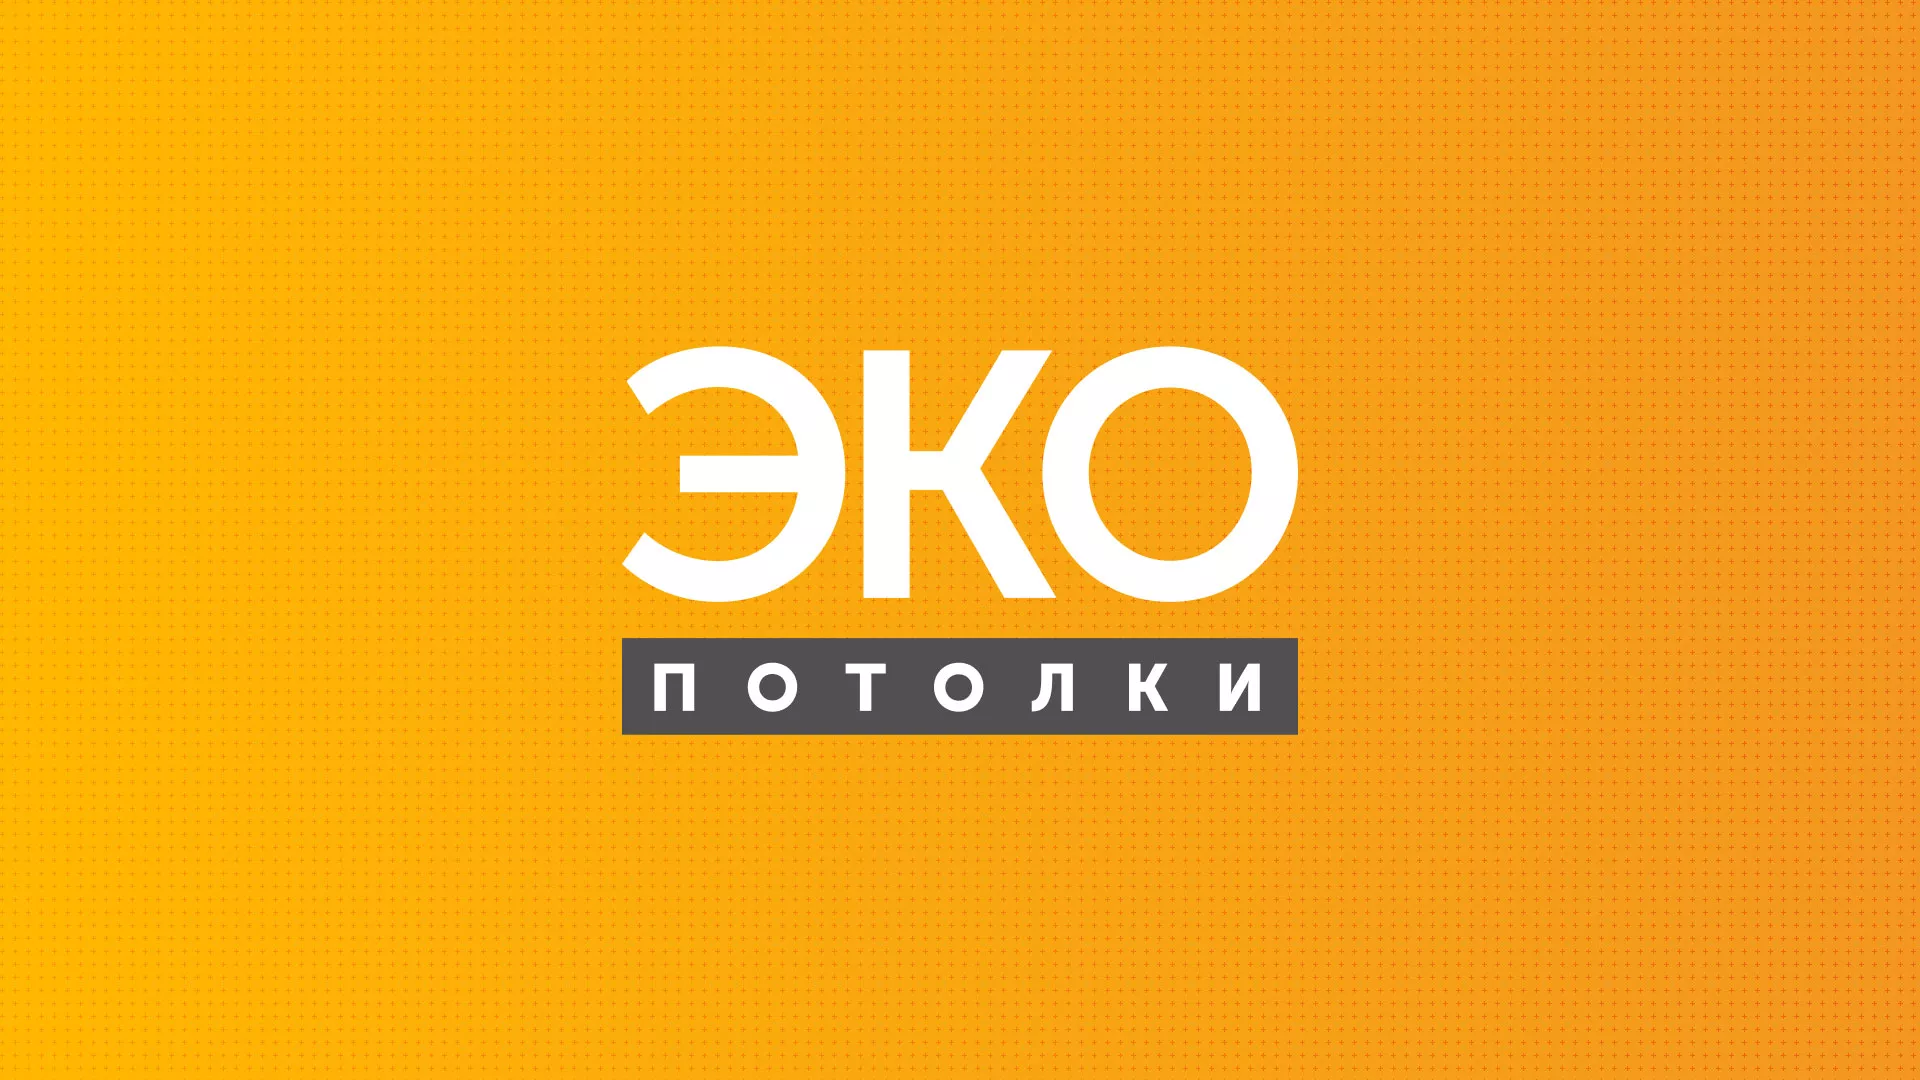 Разработка сайта по натяжным потолкам «Эко Потолки» в Михайлове